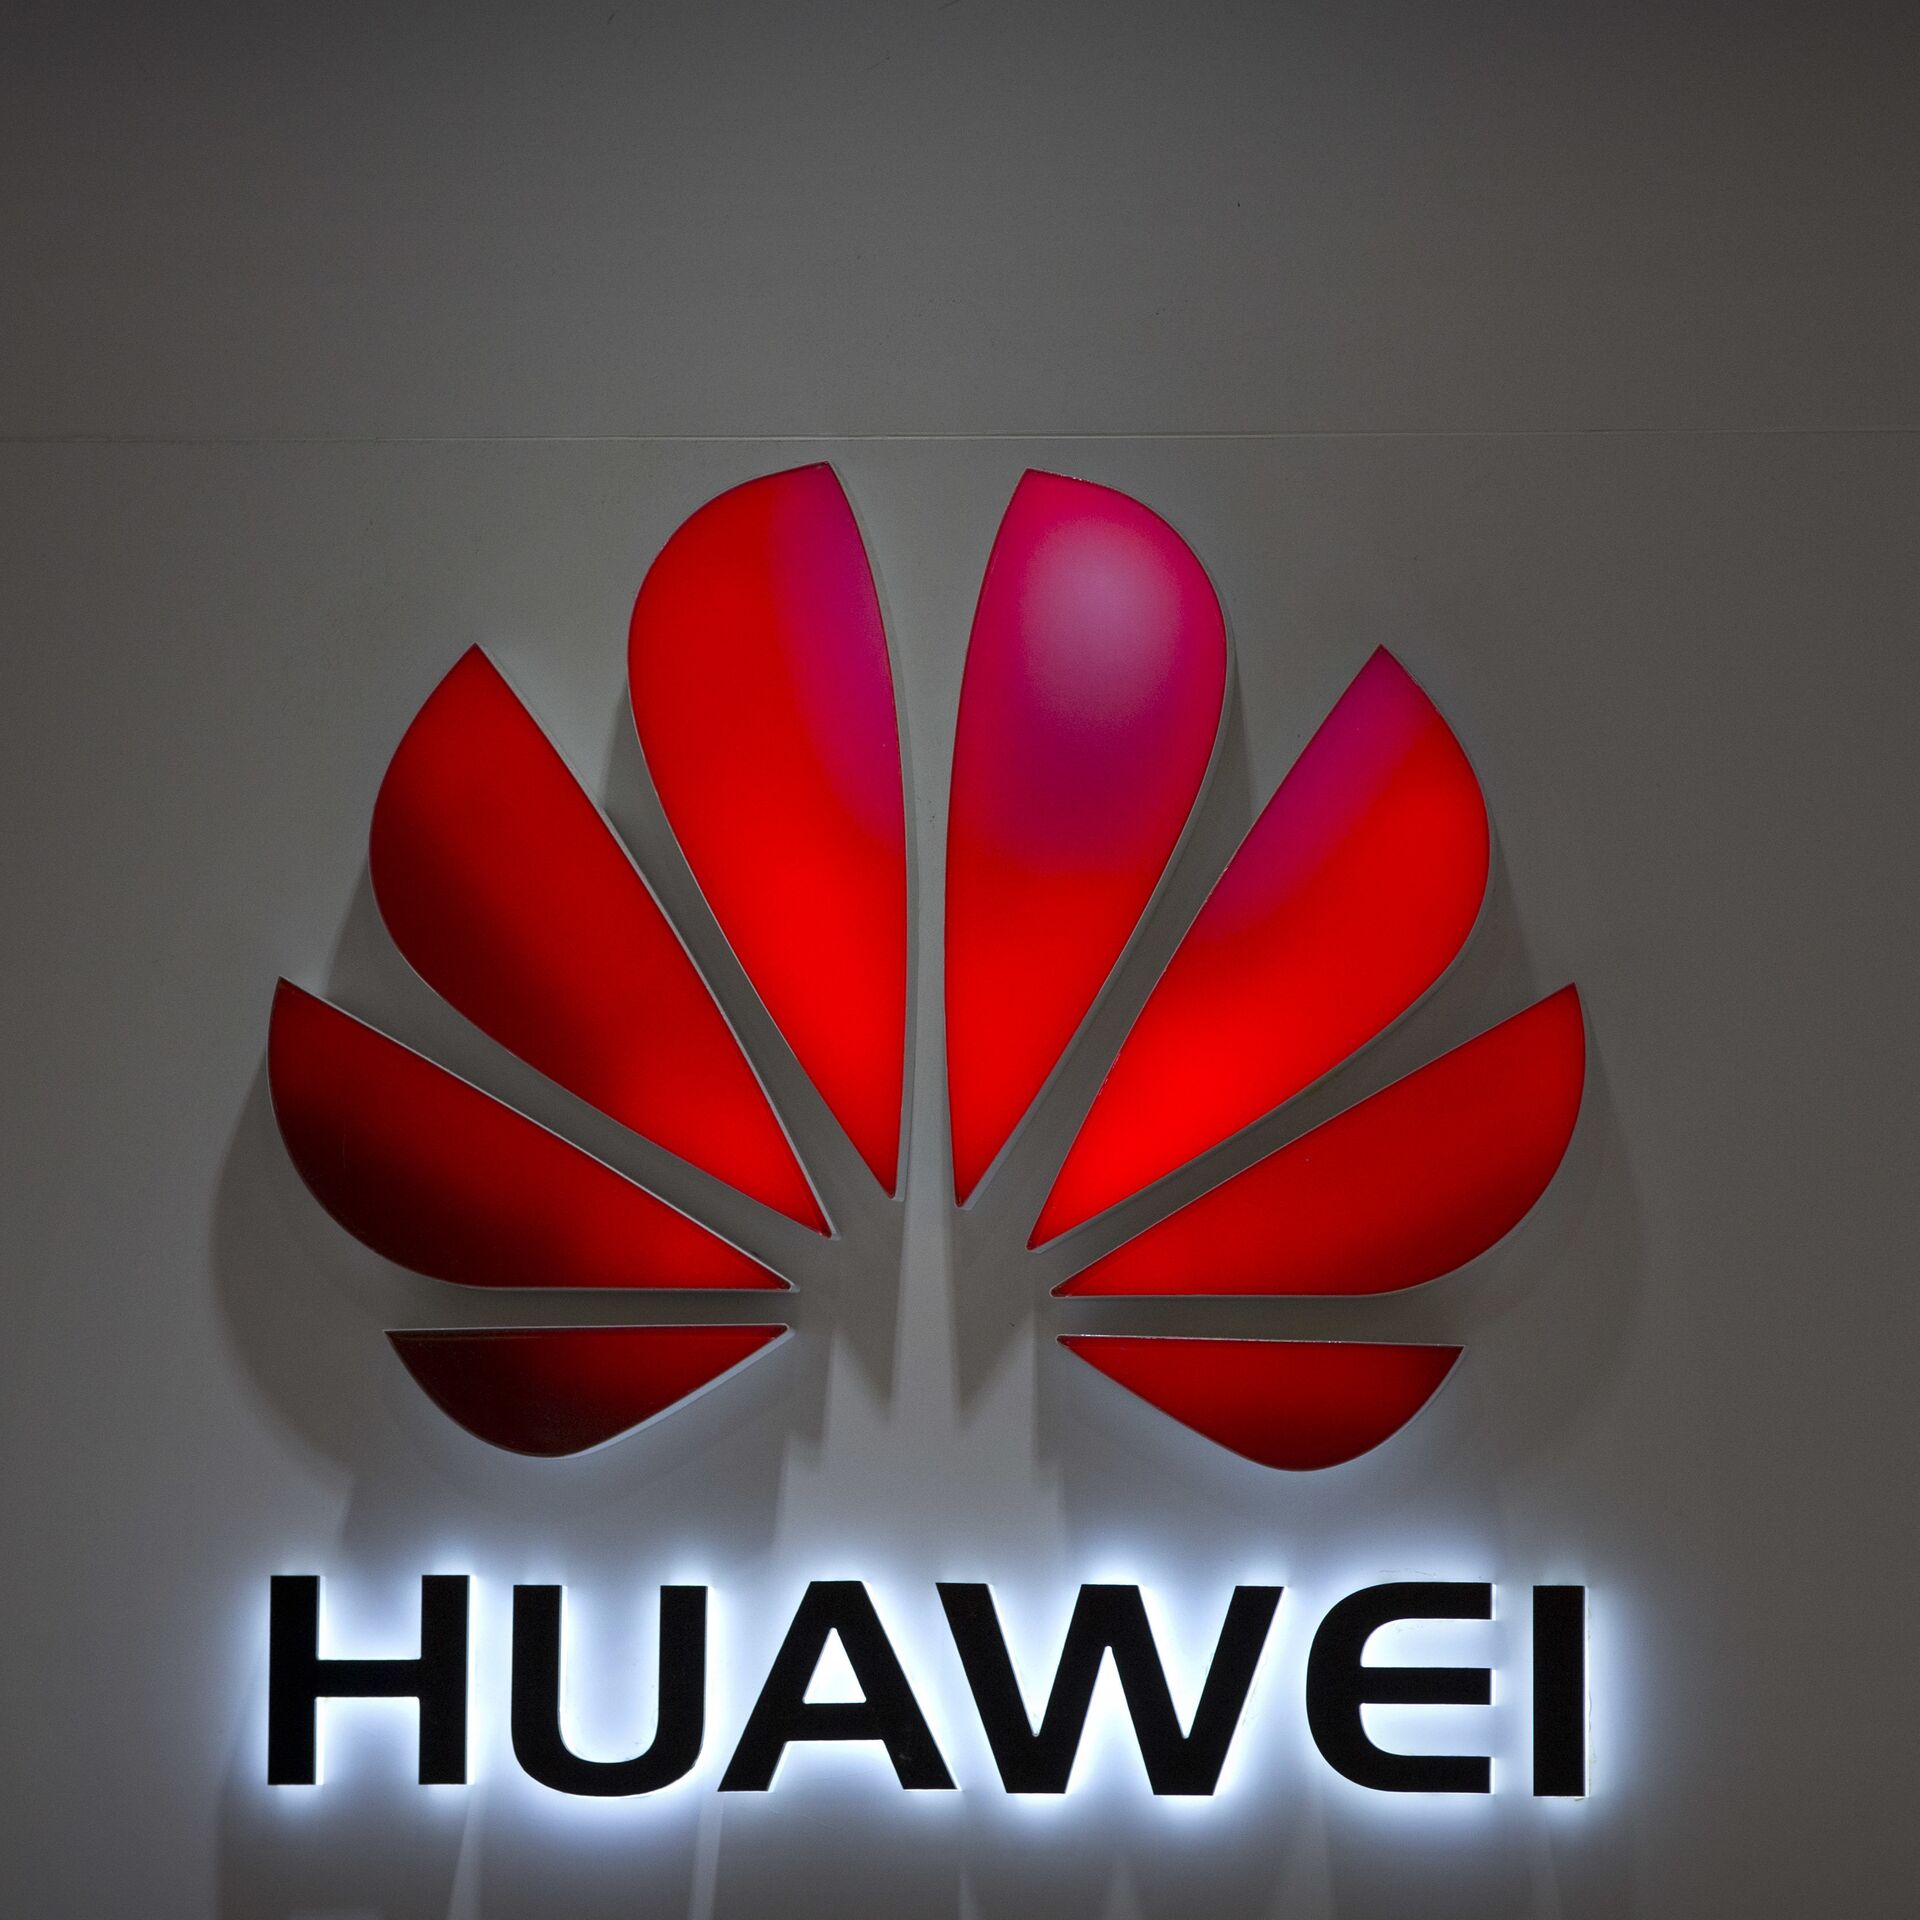 La amenaza del 5G y Huawei: ¿peligro real o golpe bajo a la competencia? -  06.03.2019, Sputnik Mundo